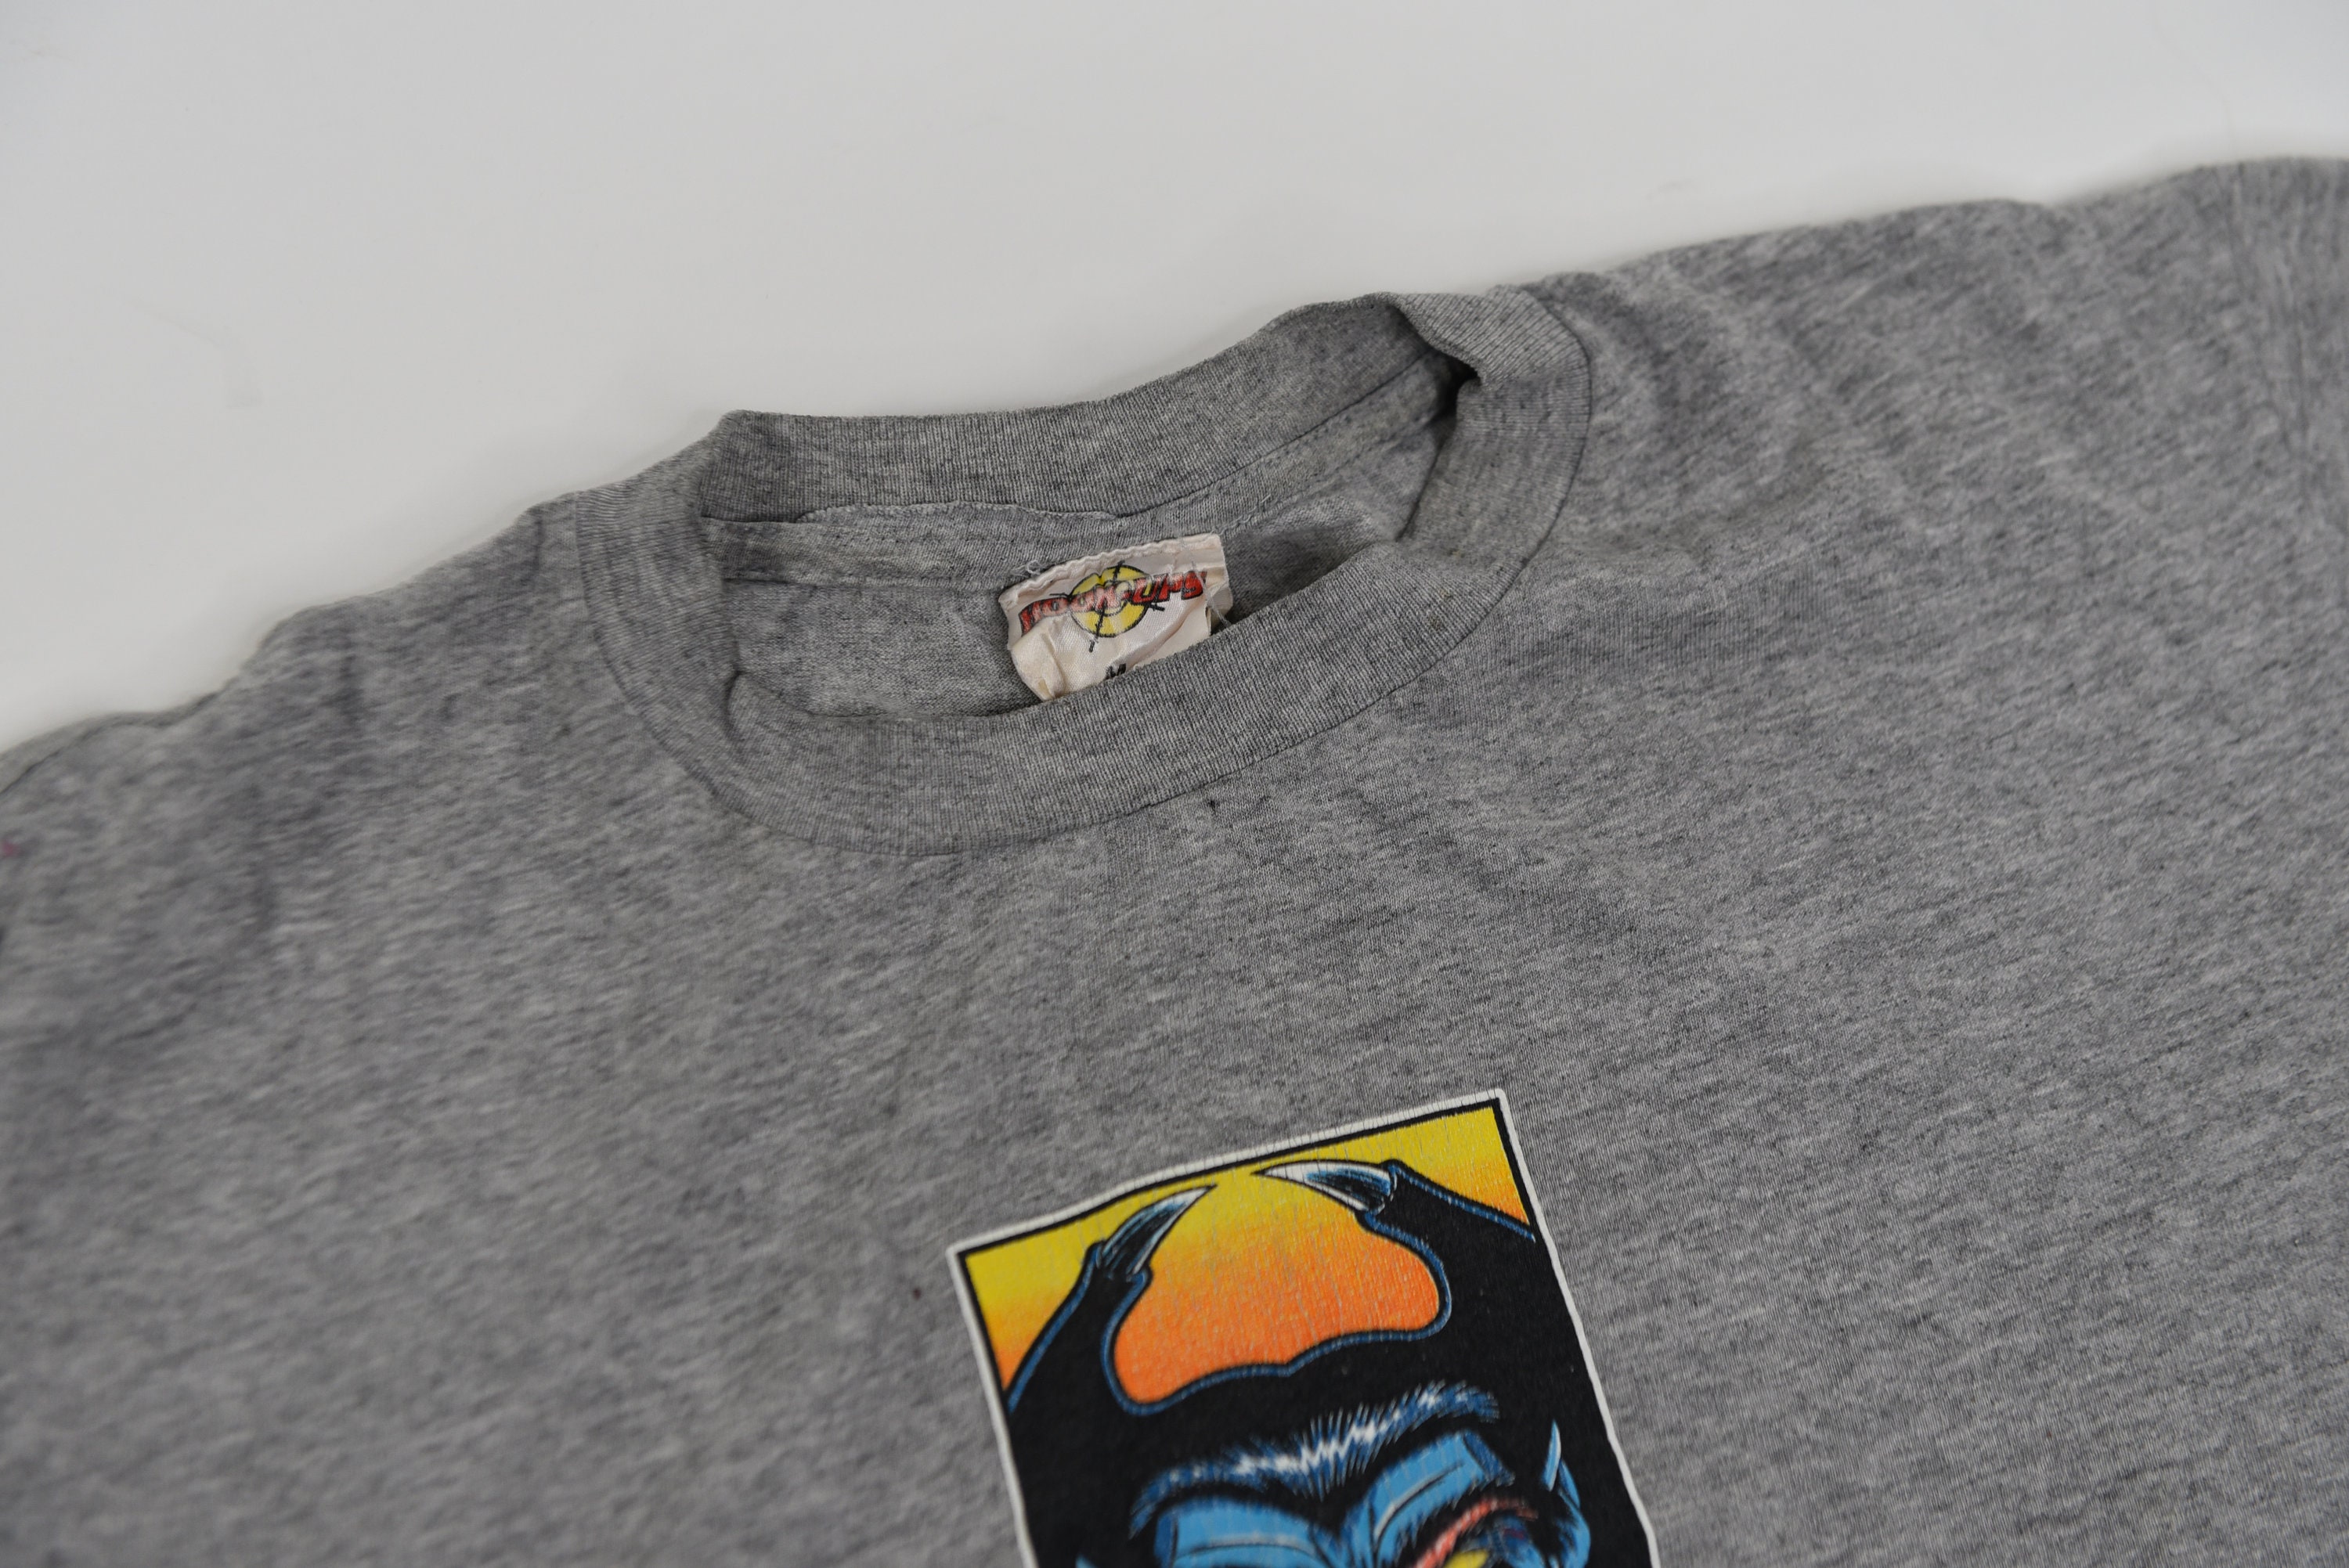 Amazing Vintage 00's Hook Ups Blue Demon / Devil Skateboarding T-Shirt